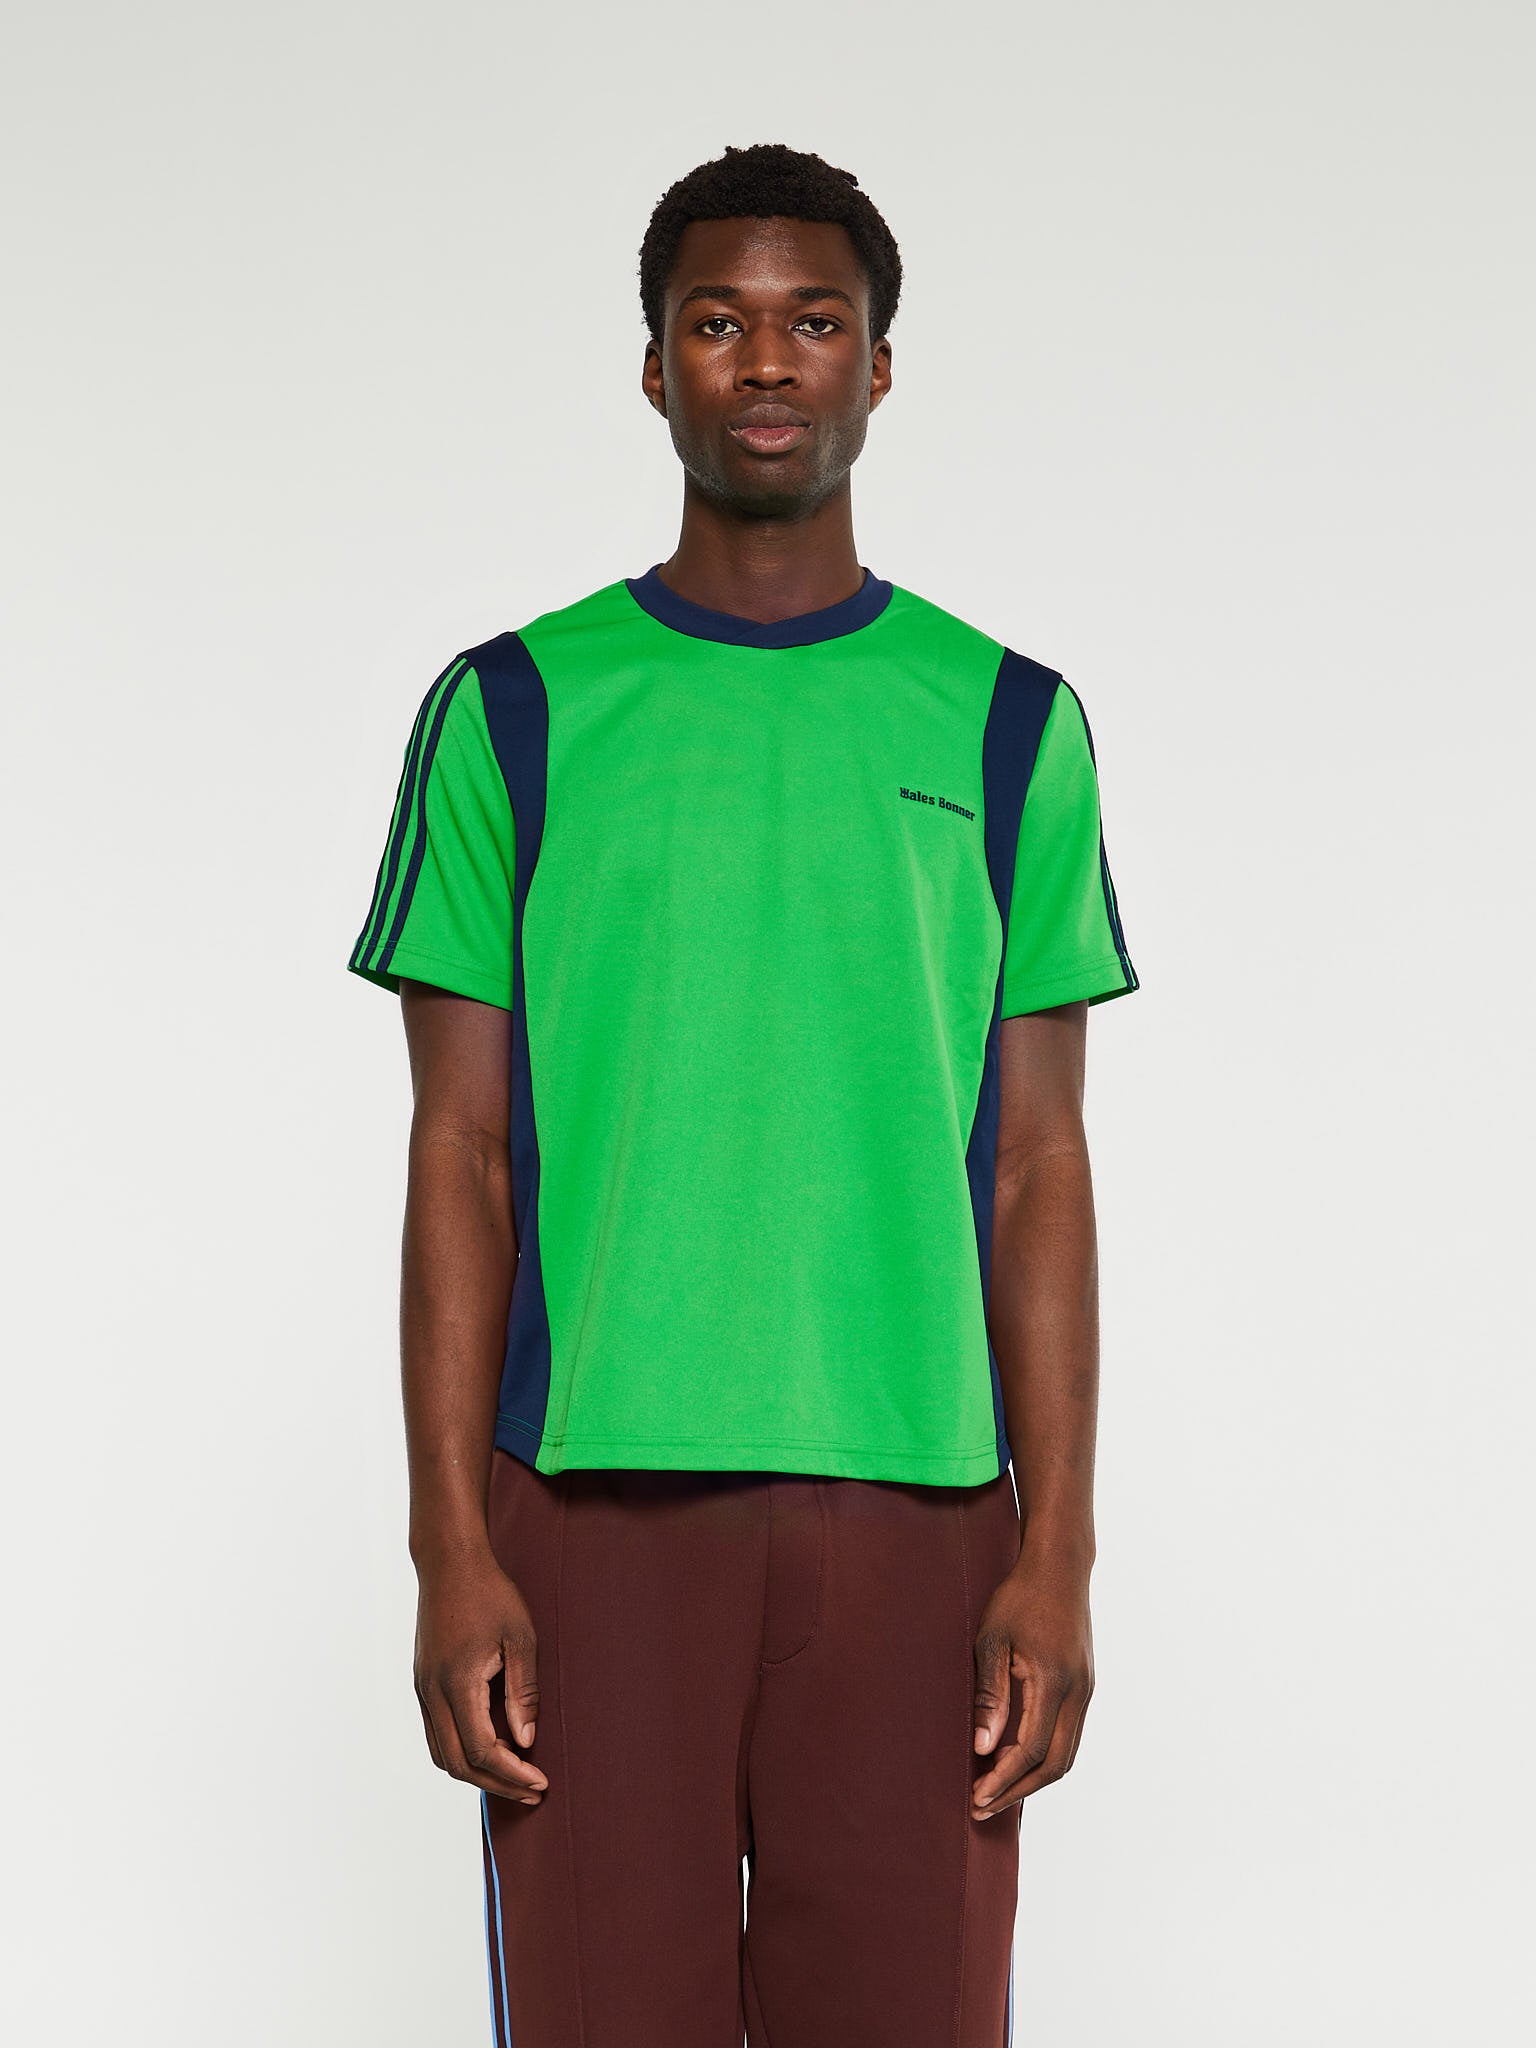 Adidas - Wales Bonner Football Shirt in Vivid Green